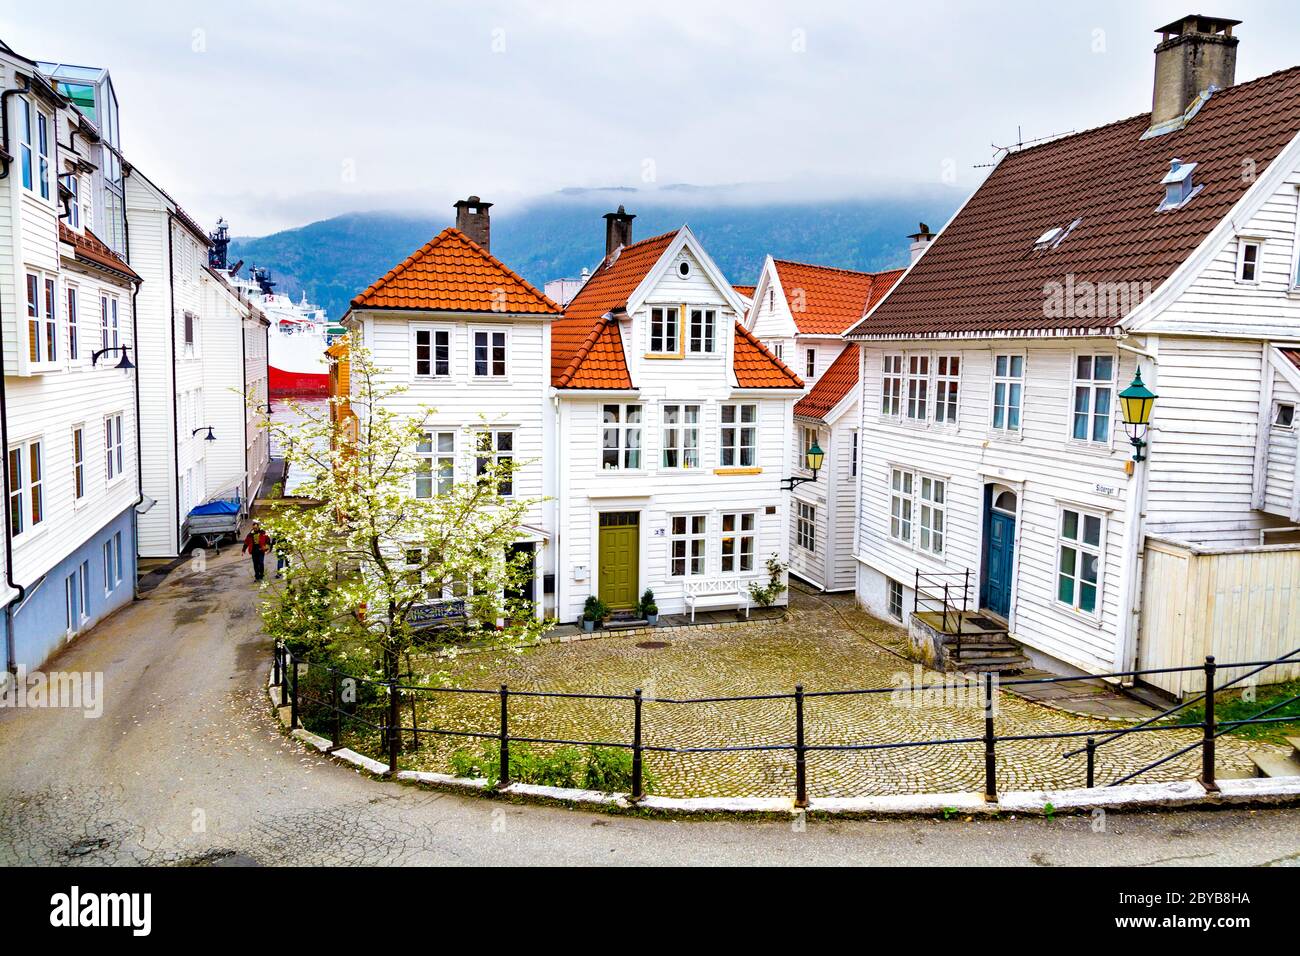 Maisons norvégiennes blanches typiques dans le quartier de Nordnes, Sliberget, Bergen, Norvège Banque D'Images